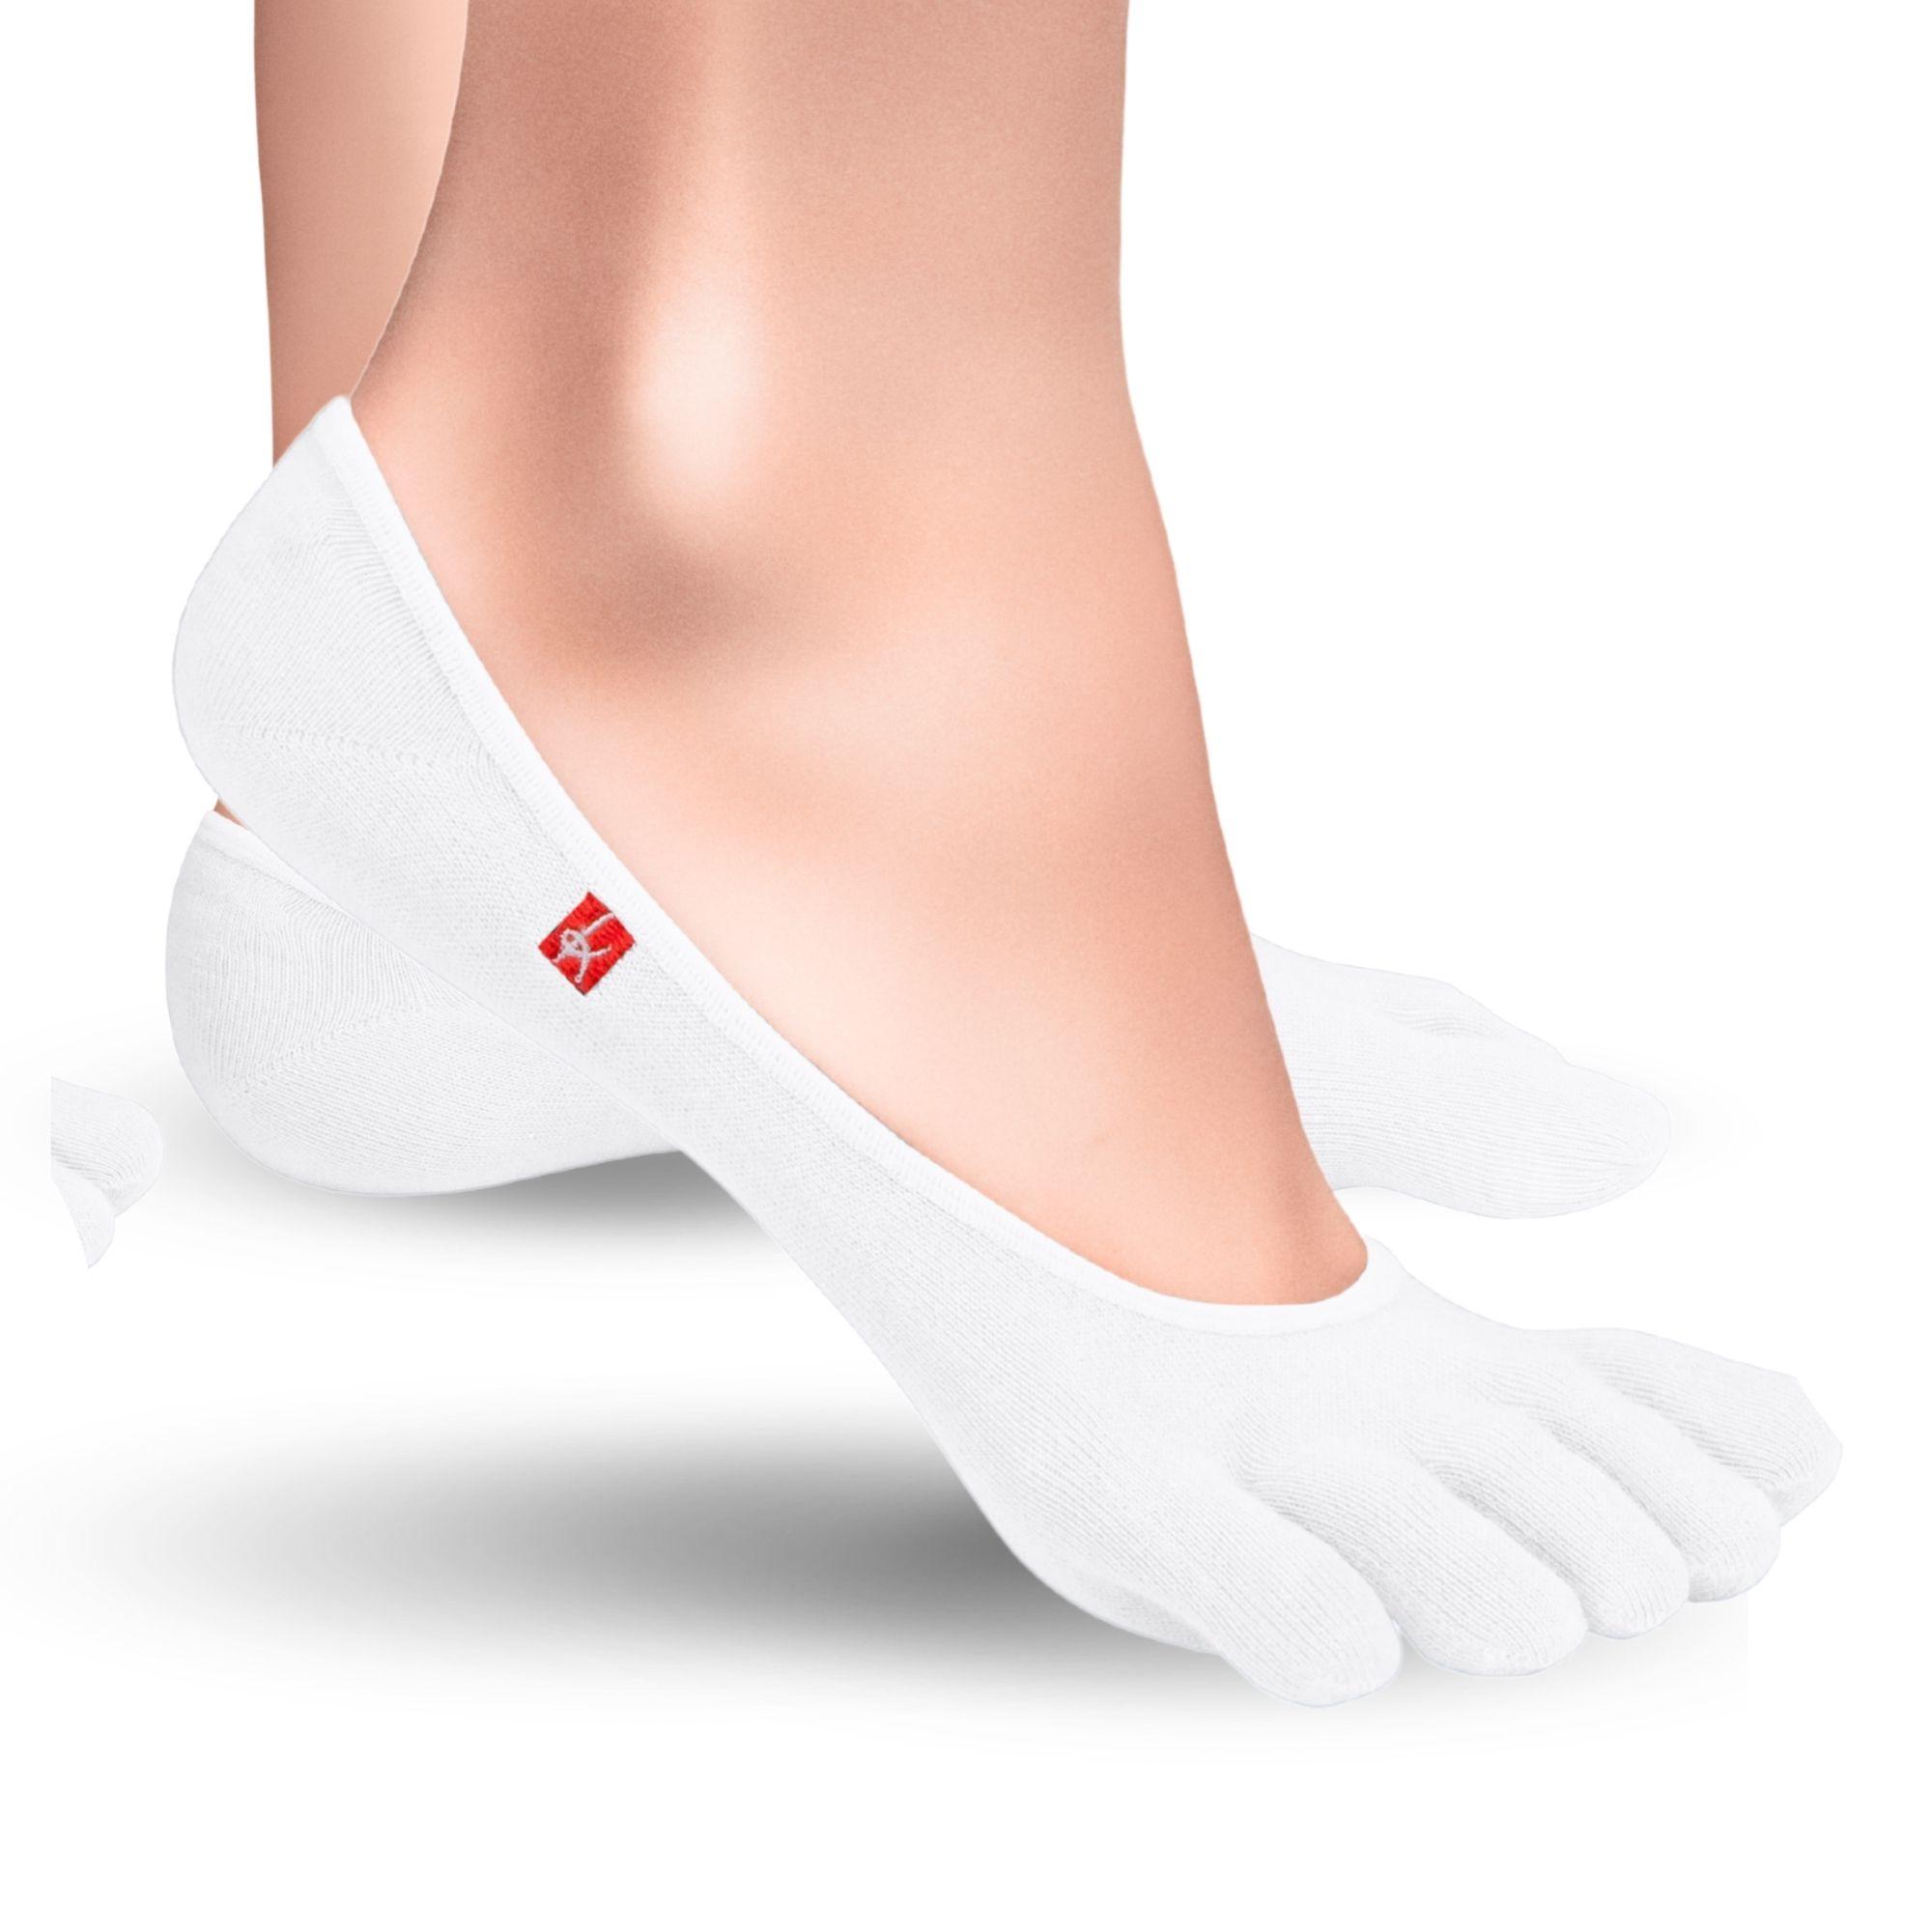 Knitido Zero Coolmax toe socks ladies toe socks in white